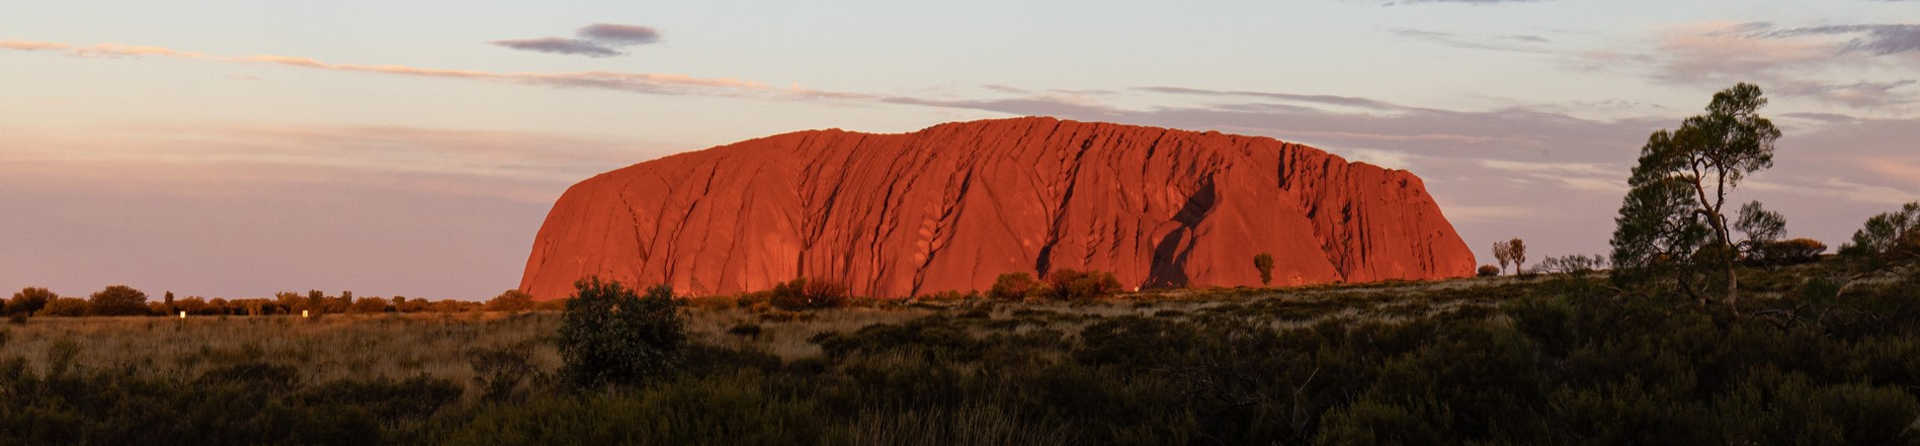 Do Aboriginals own Uluru?